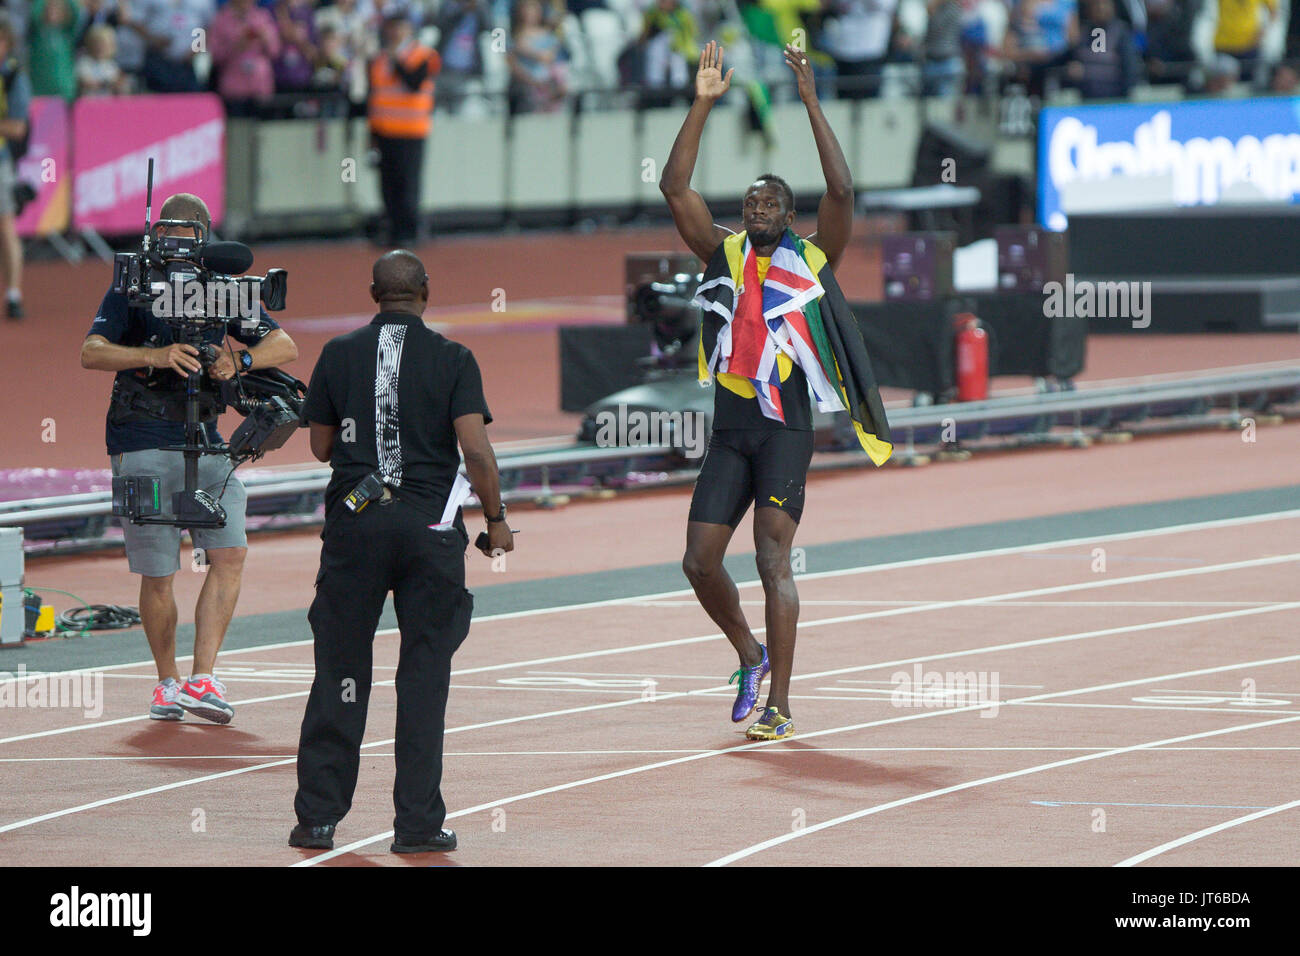 Londra, Inghilterra - 05 agosto: Usain Bolt della Giamaica dopo il suo terzo posto finale in uomini 100 metri final durante il giorno due del XVI IAAF mondiale di atletica Londra 2017 presso il London Stadium il 5 agosto 2017 a Londra, Regno Unito Foto Stock